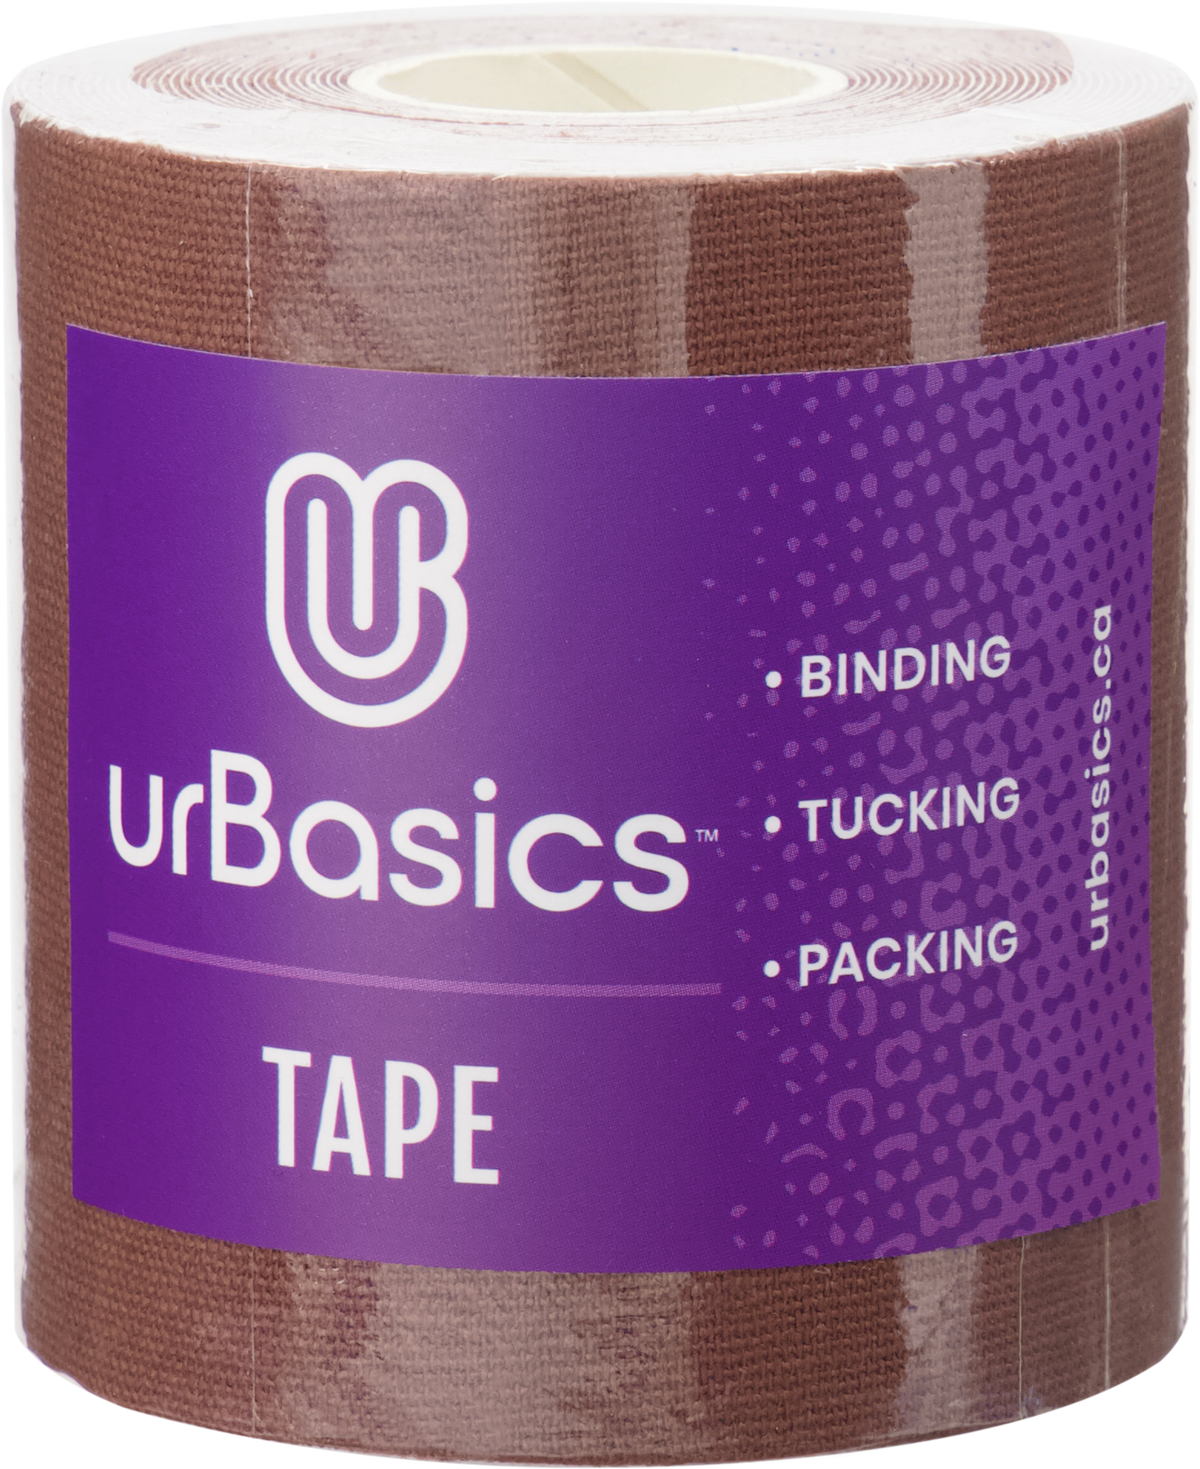 Binding / Packing / Tucking - Tape